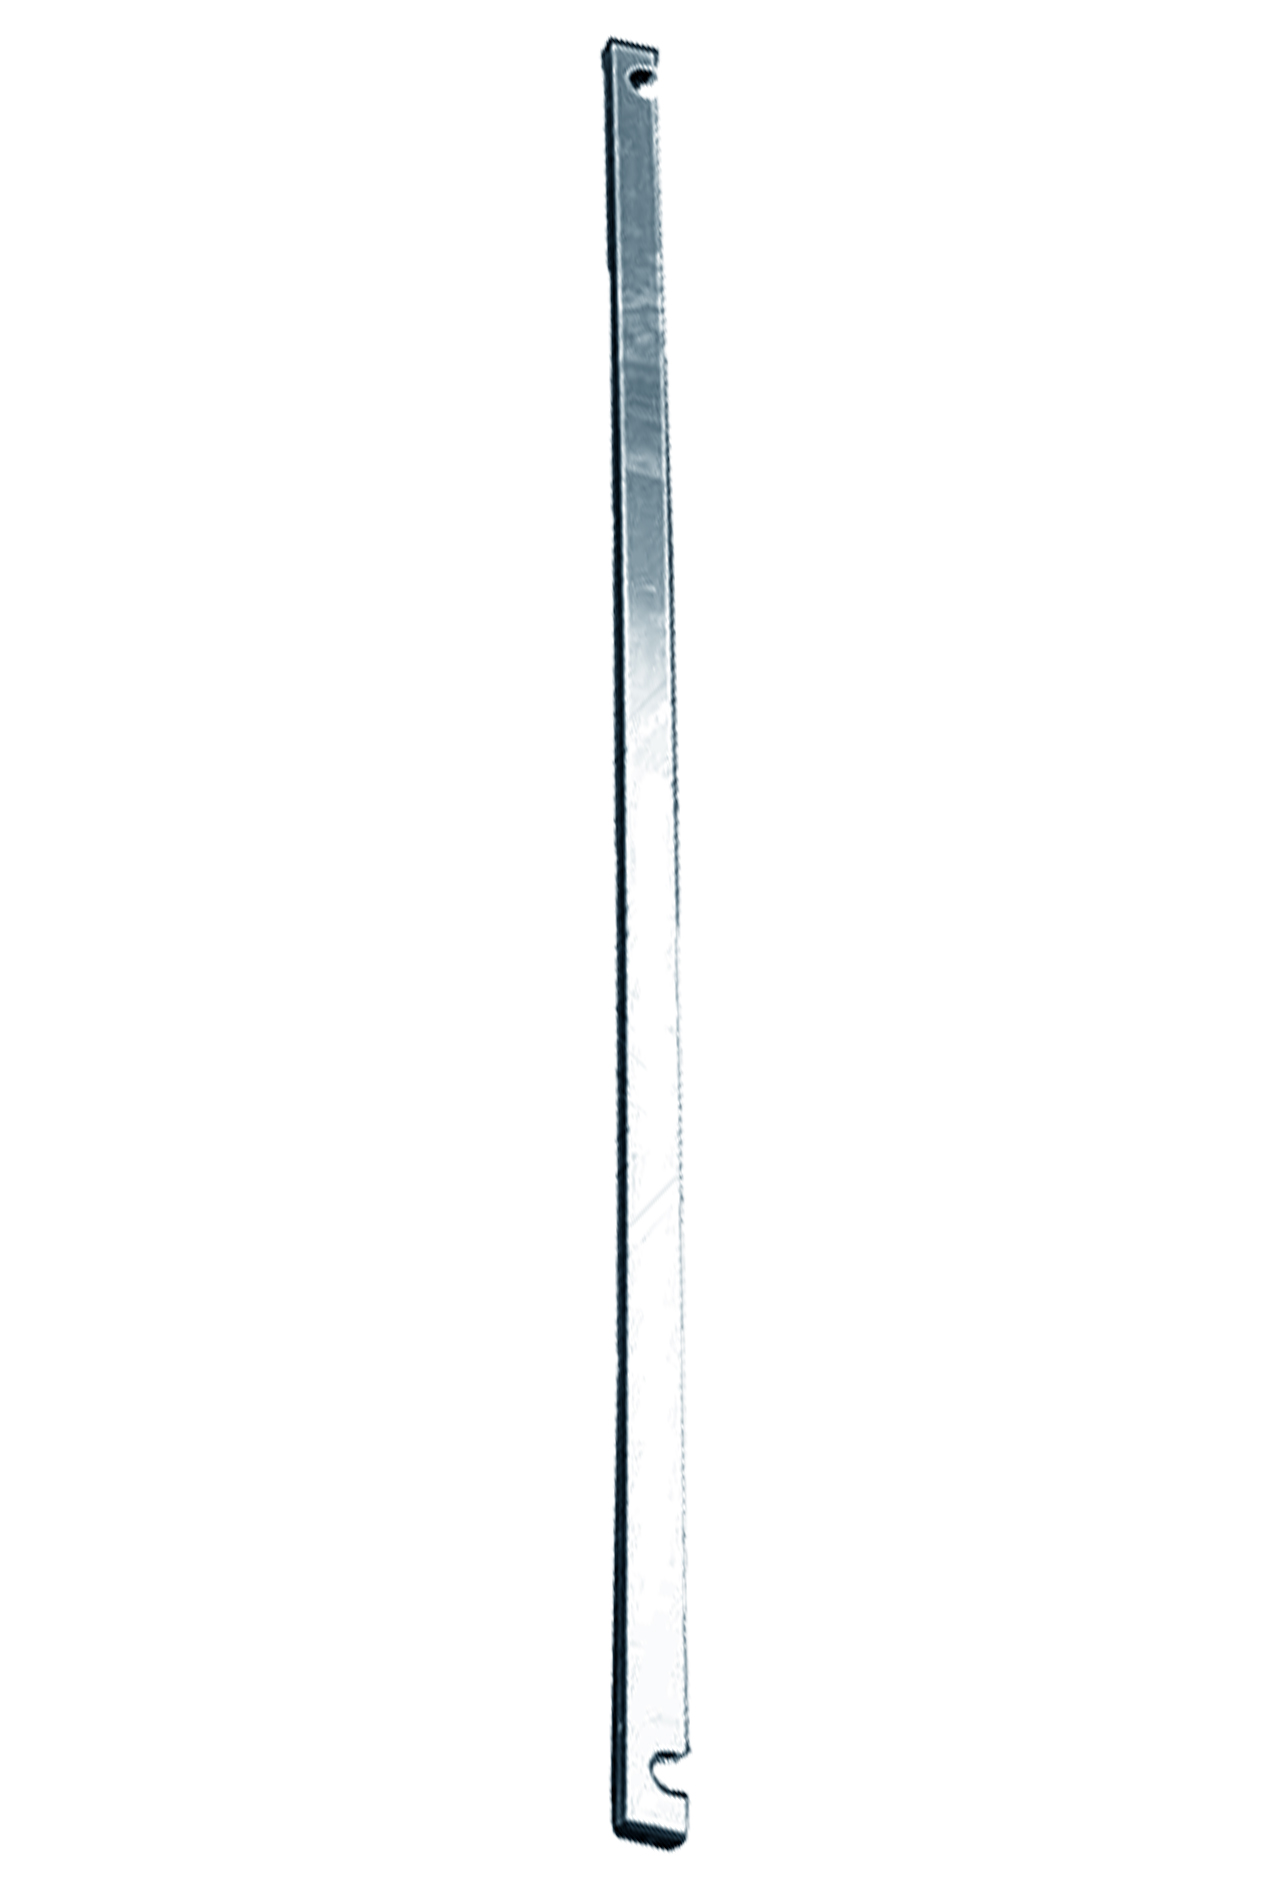 Дополнительное изображение Stabilo серии 1000 рабочая высота 8,2 м, размер площадки (2.5x0.75 м)